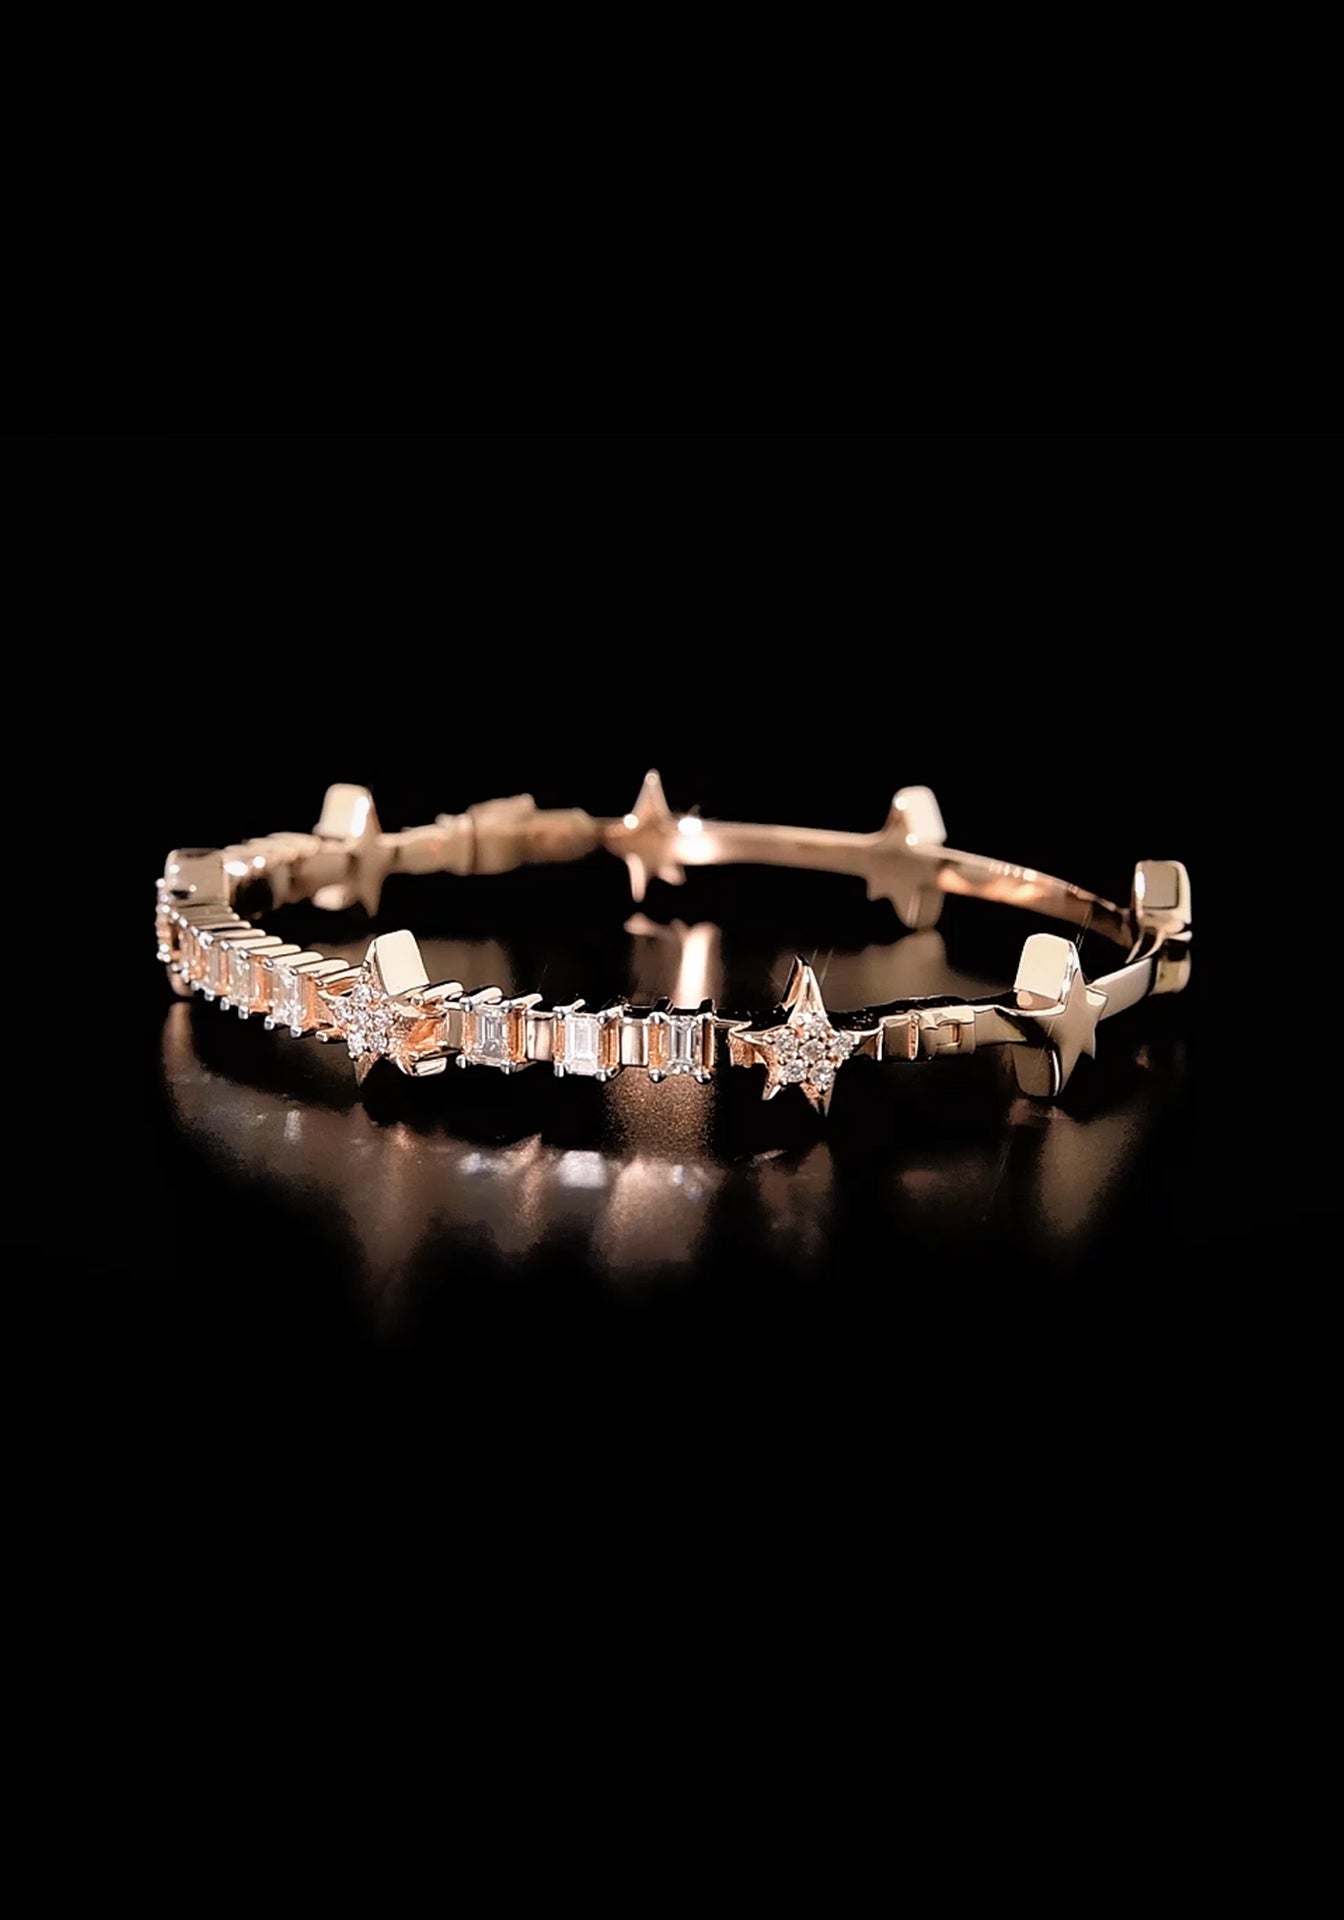 Sirius Star, 18K Rose Gold + Diamond Bracelet